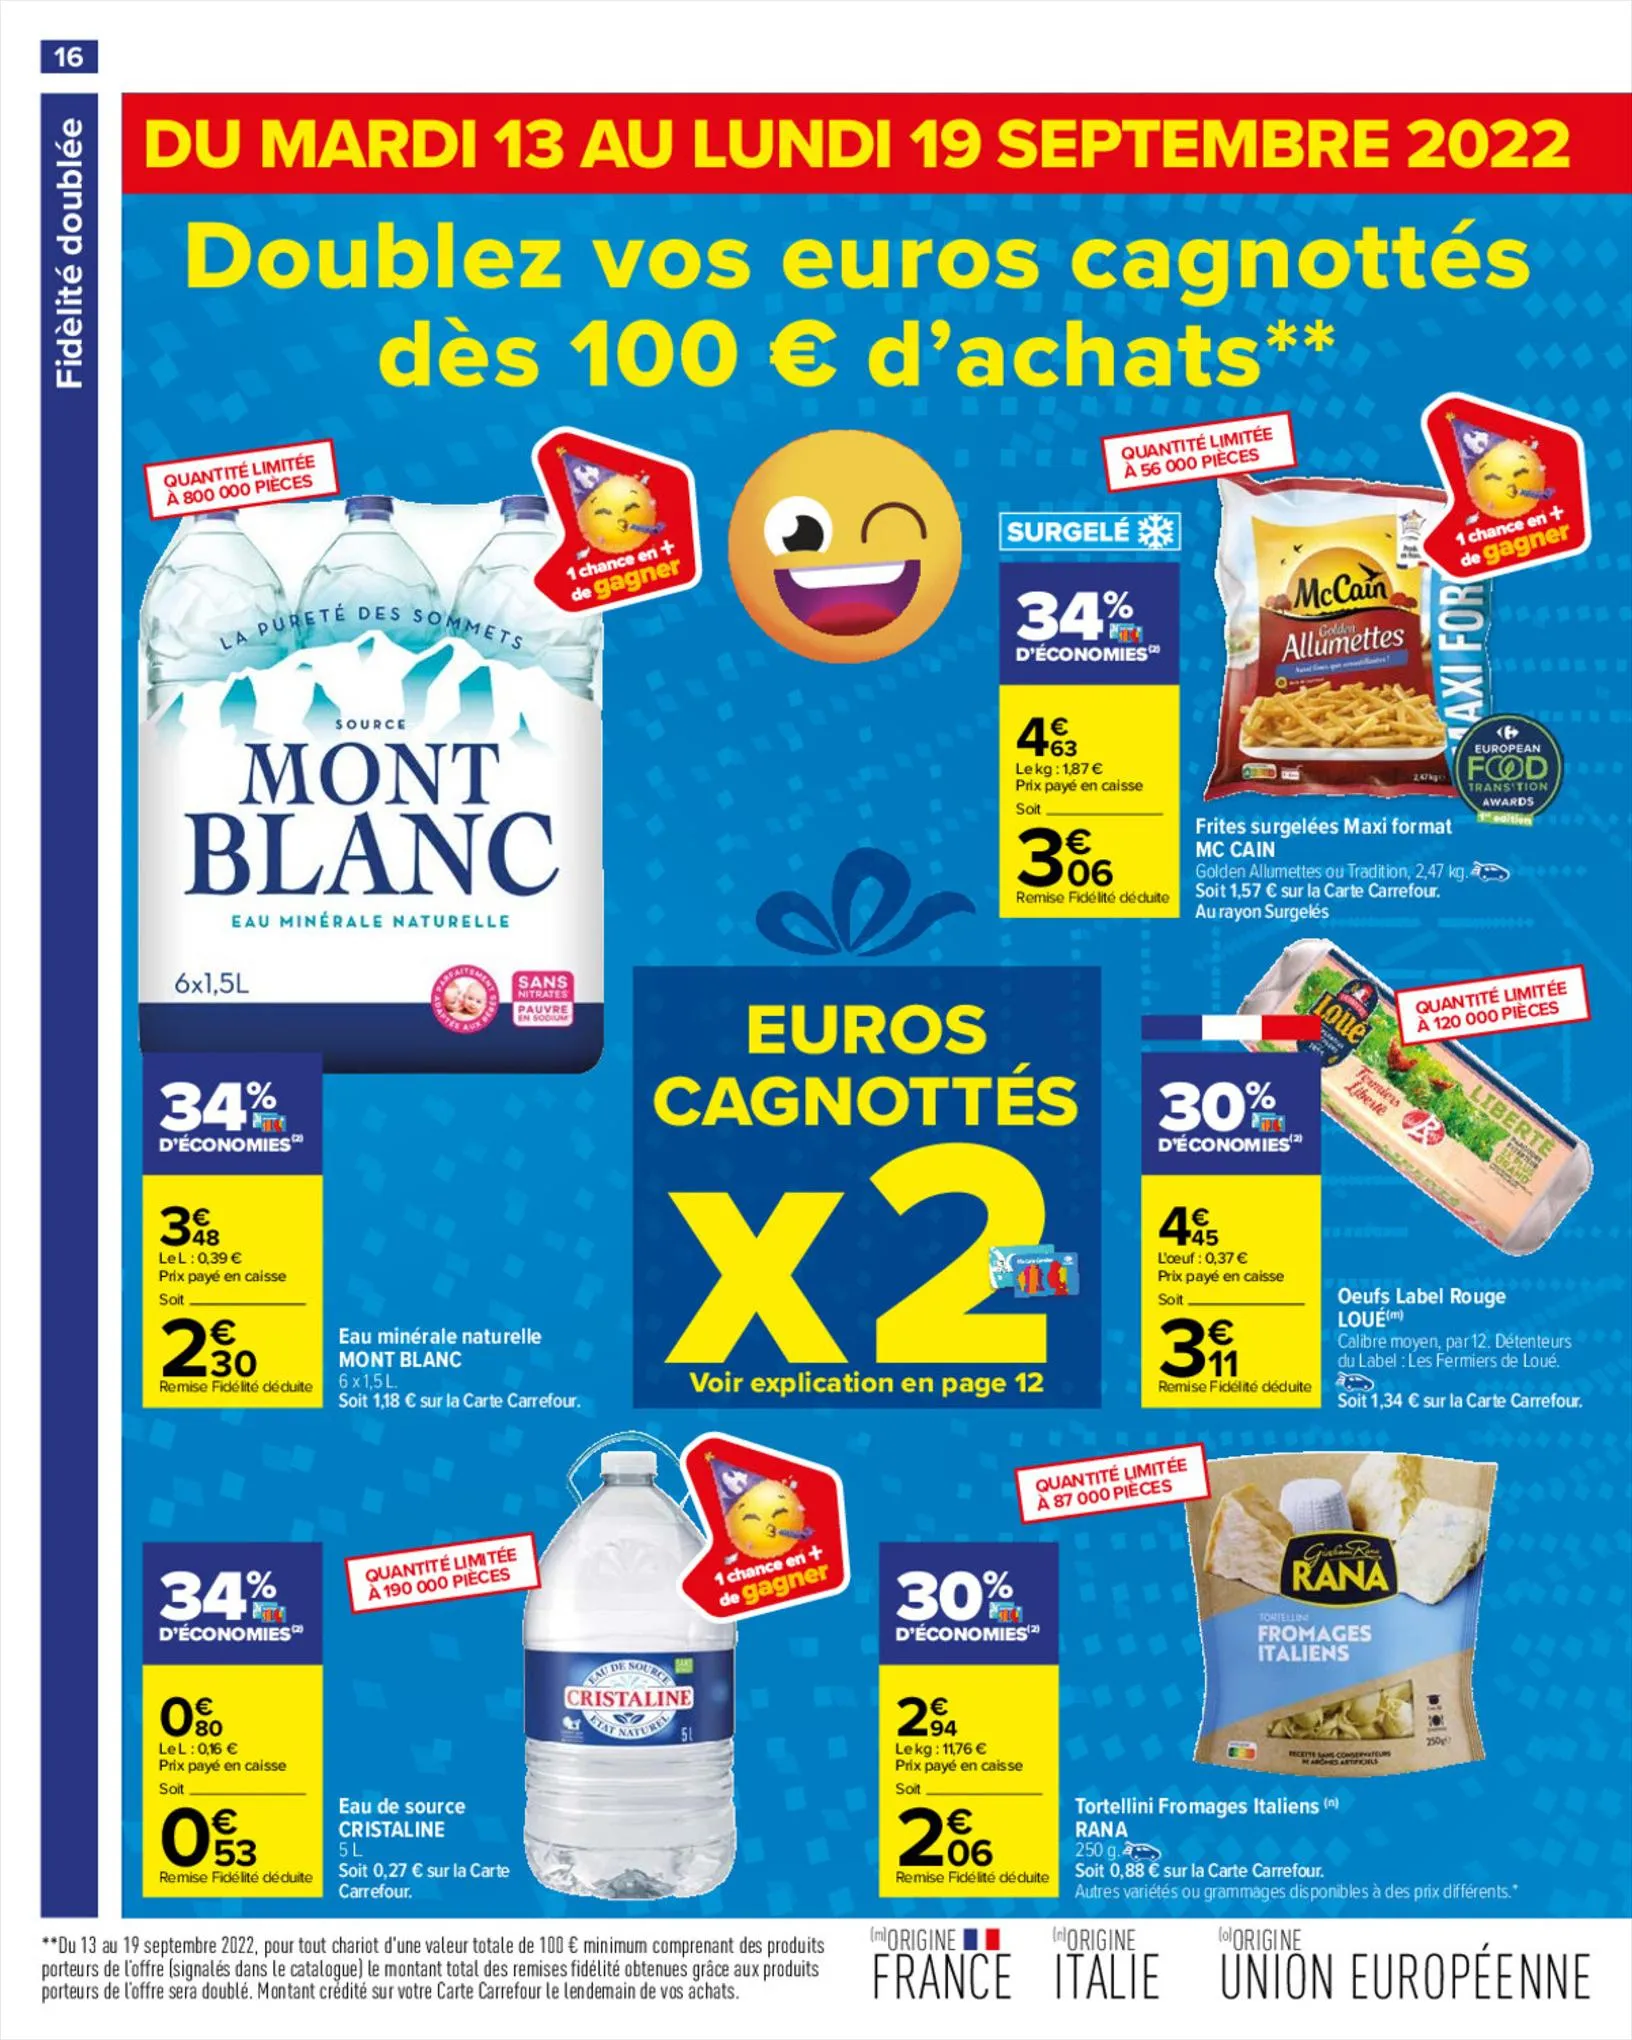 Catalogue Mois Bingo - Doublez vos euros cagnottés, page 00020